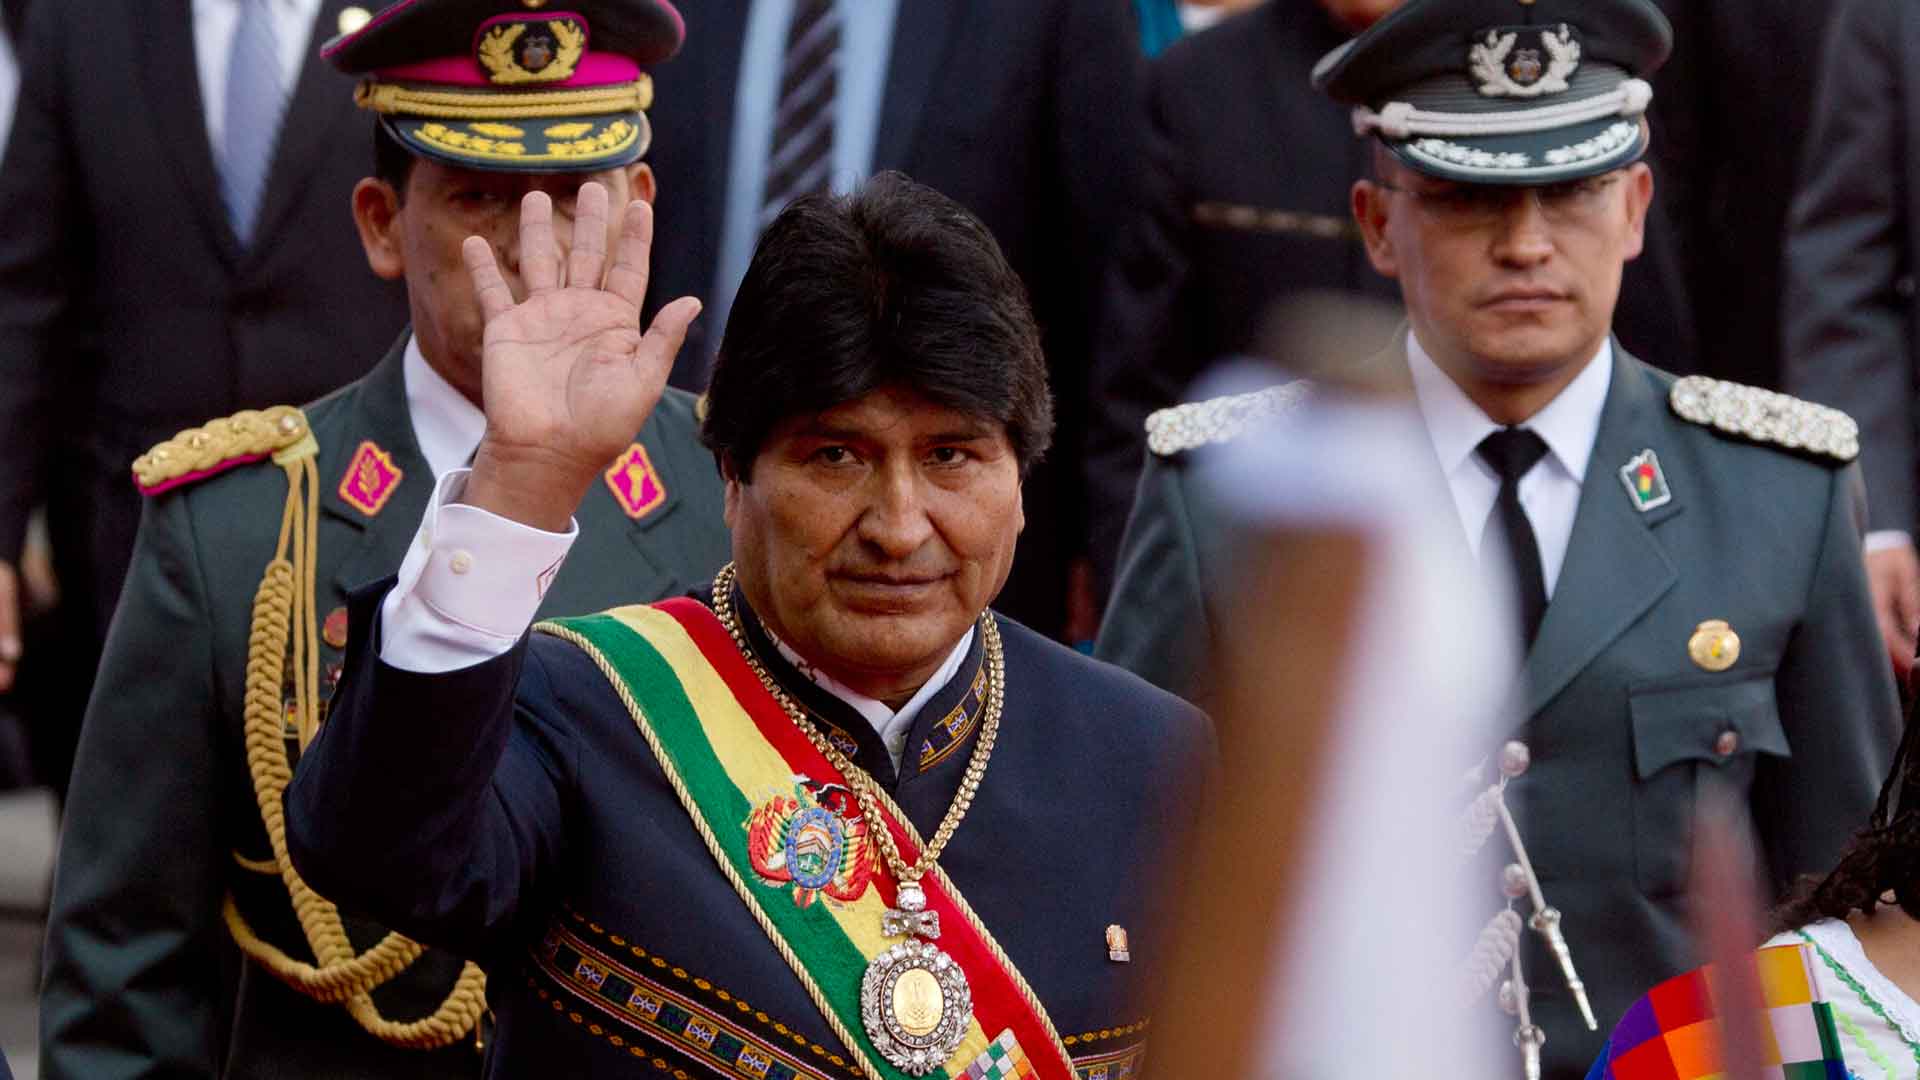 Halladas en una iglesia la medalla y la banda presidenciales de Bolivia que habían sido robadas